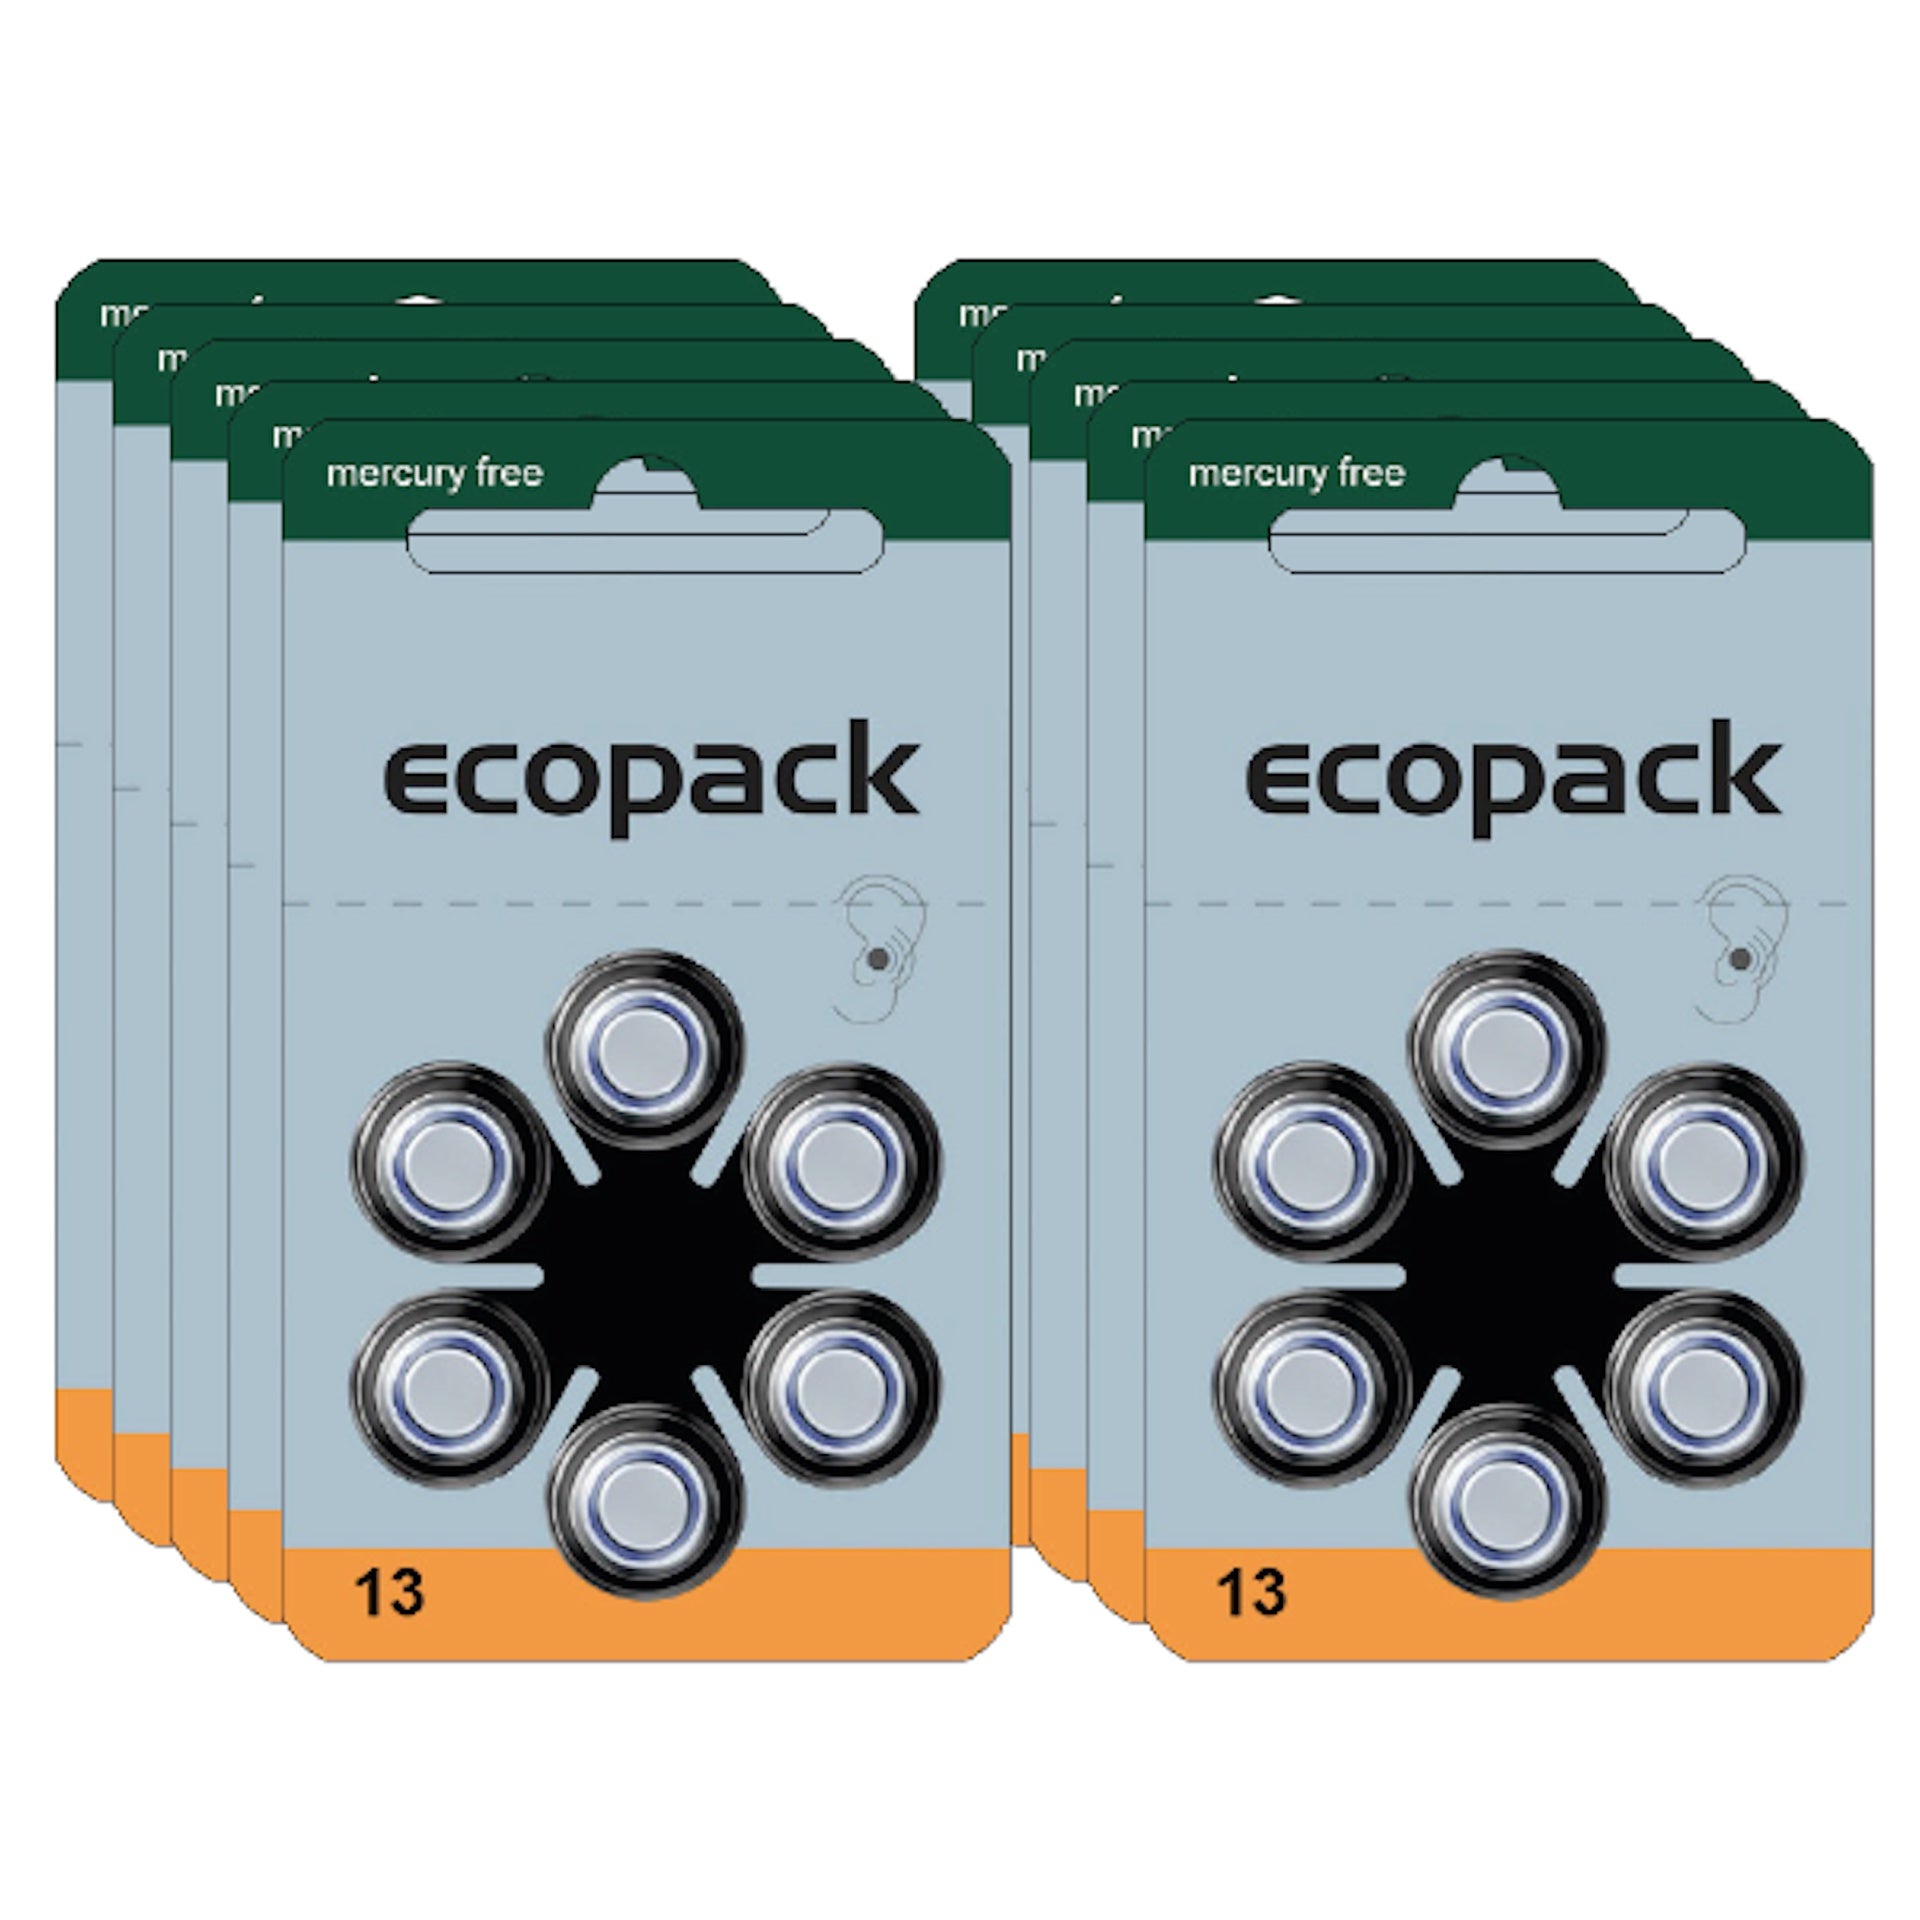 Varta Ecopack 13 Hörgerätebatterien (60er Pack) sind leistungsstarke Zink-Luft-Batterien